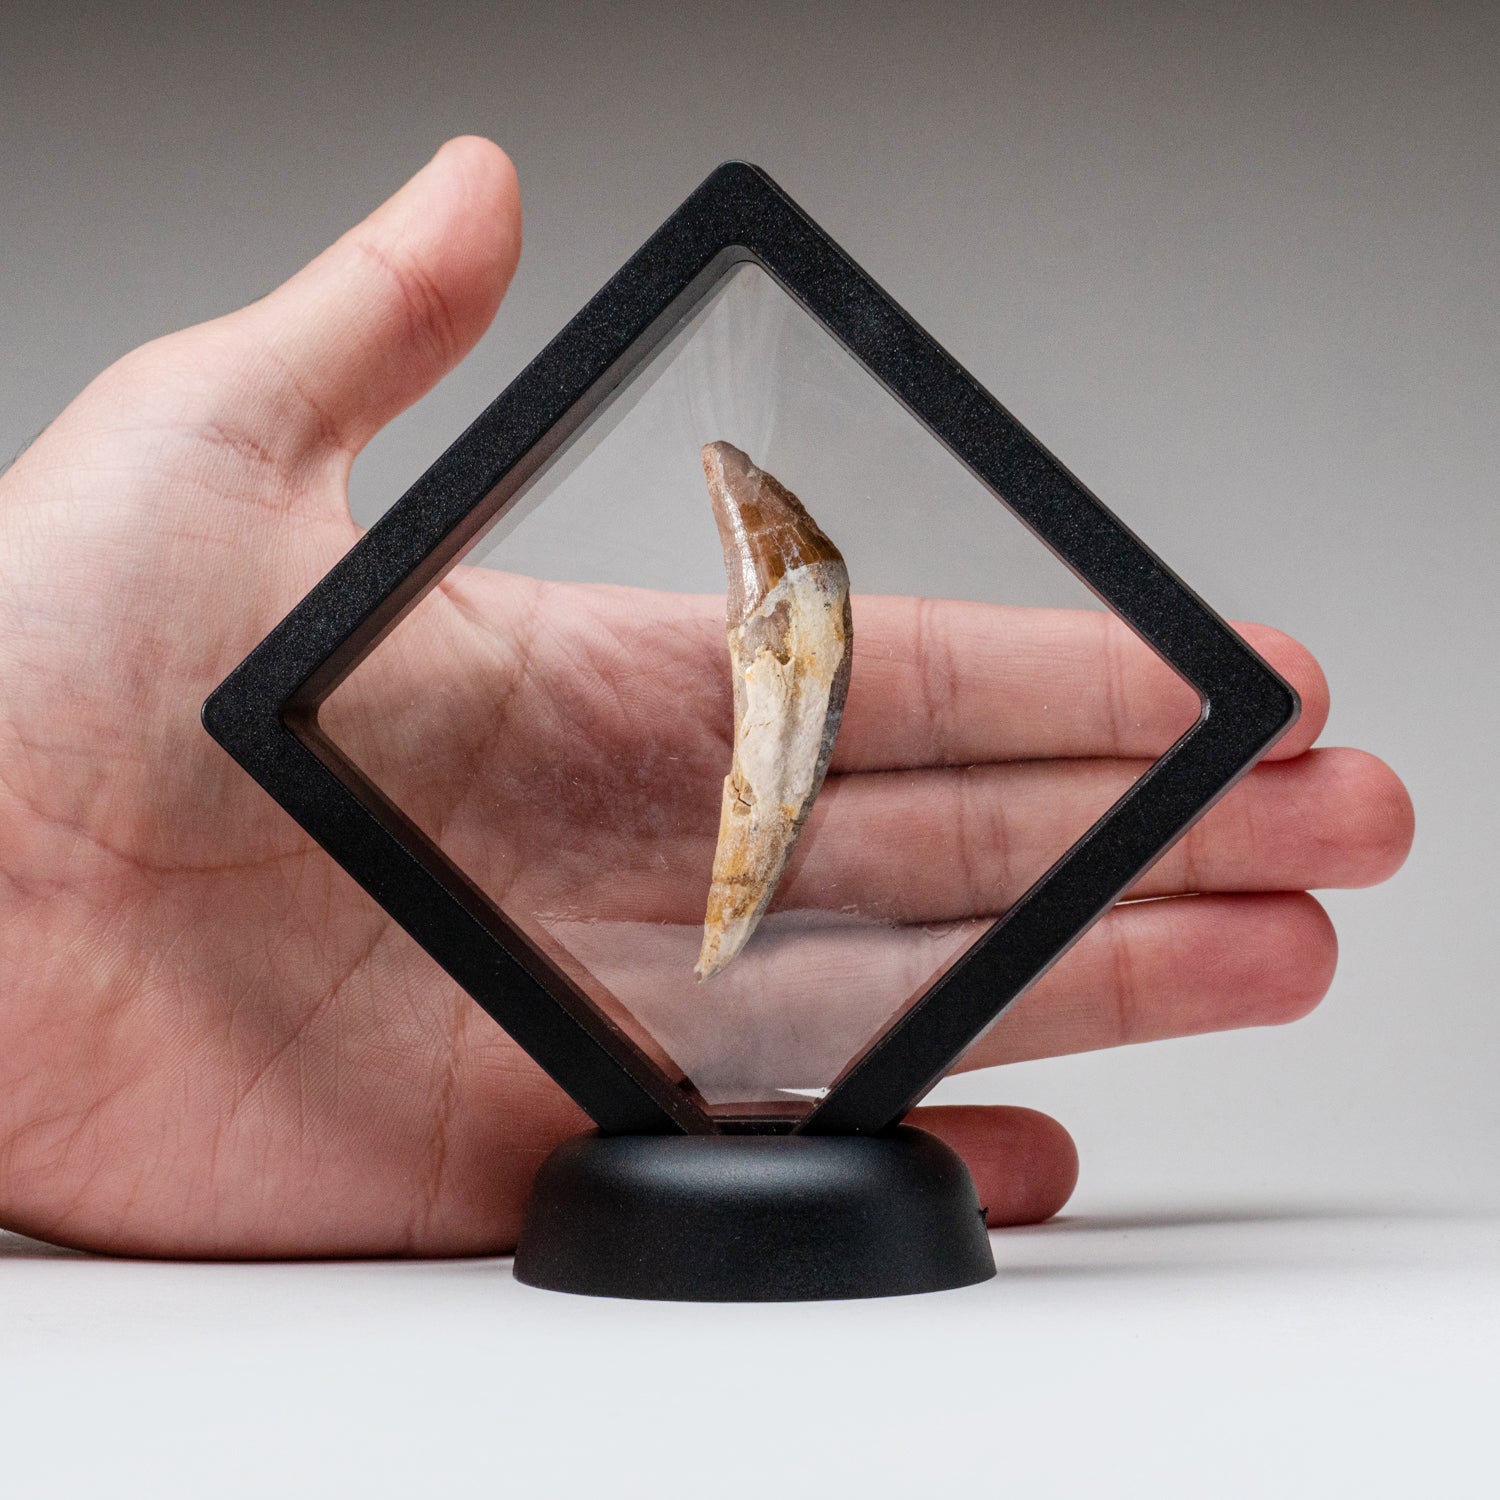 Genuine Mosasaurus Dinosaur Tooth (21.1 grams)